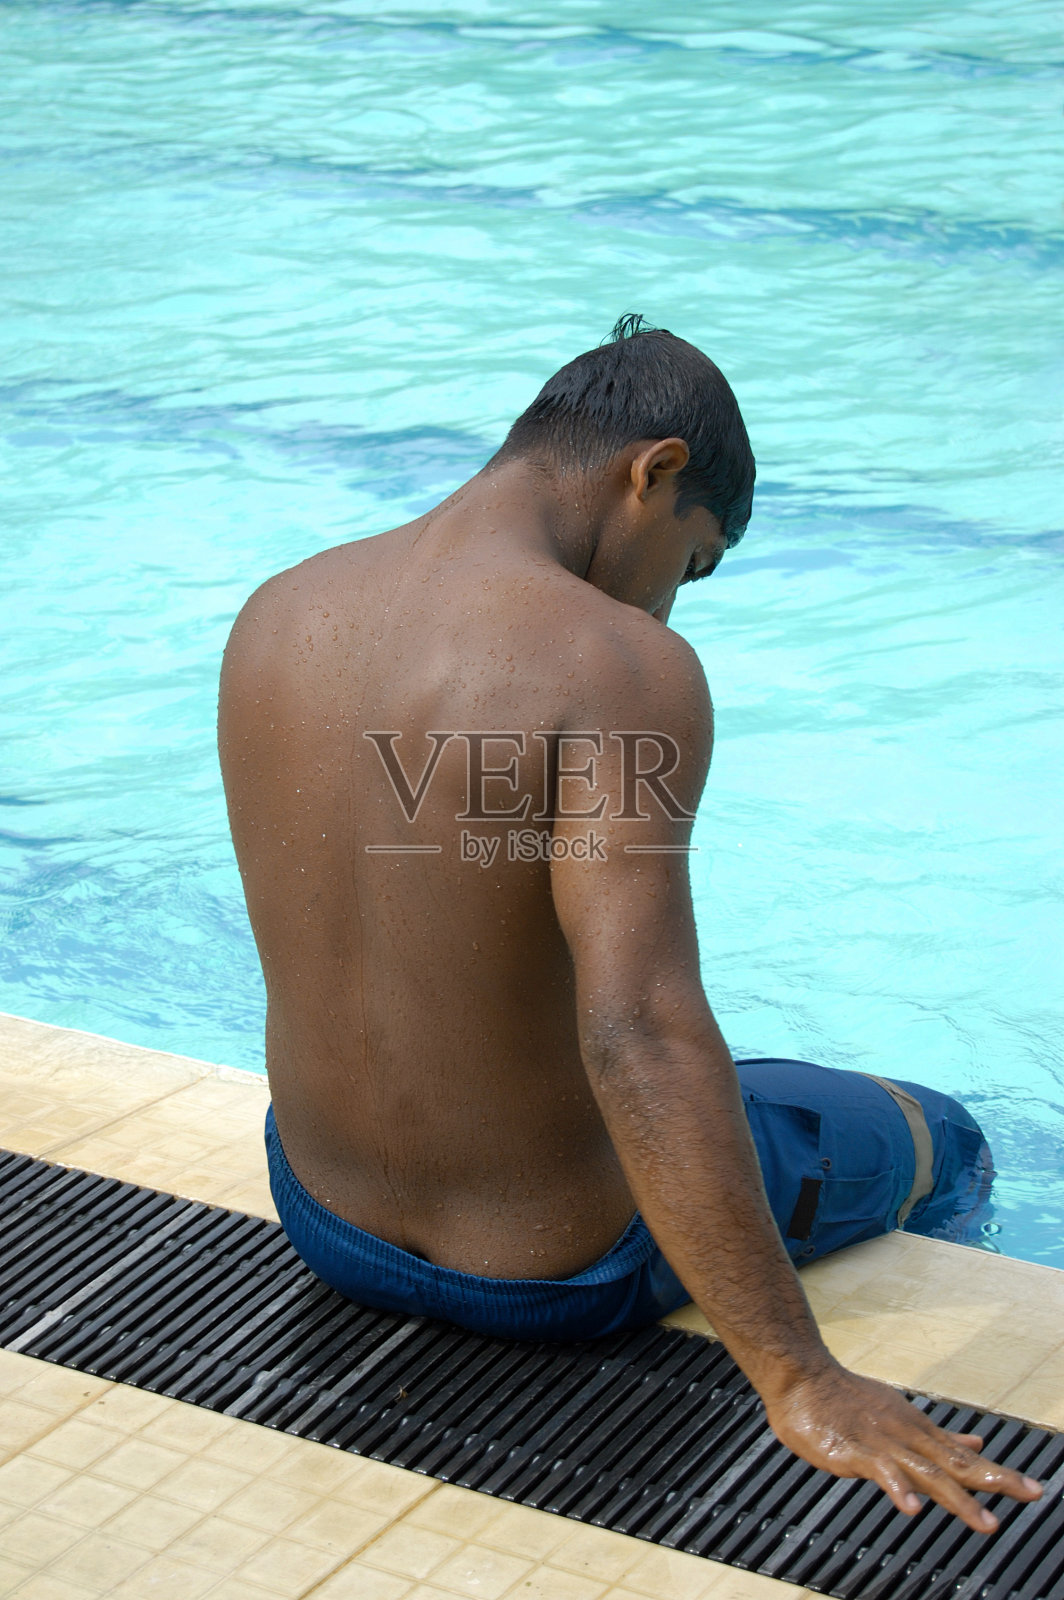 疲惫的游泳运动员照片摄影图片